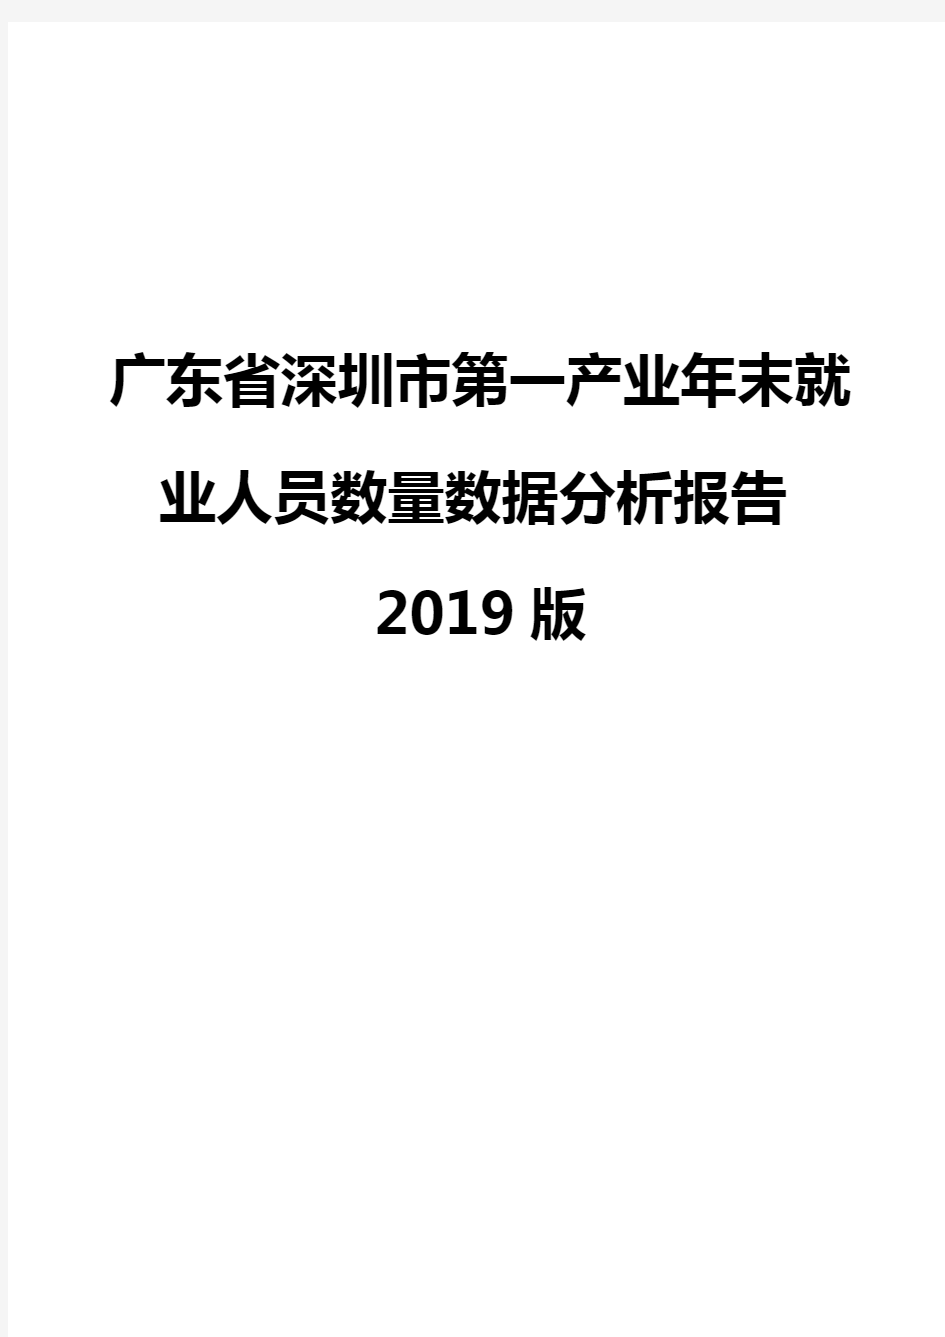 广东省深圳市第一产业年末就业人员数量数据分析报告2019版